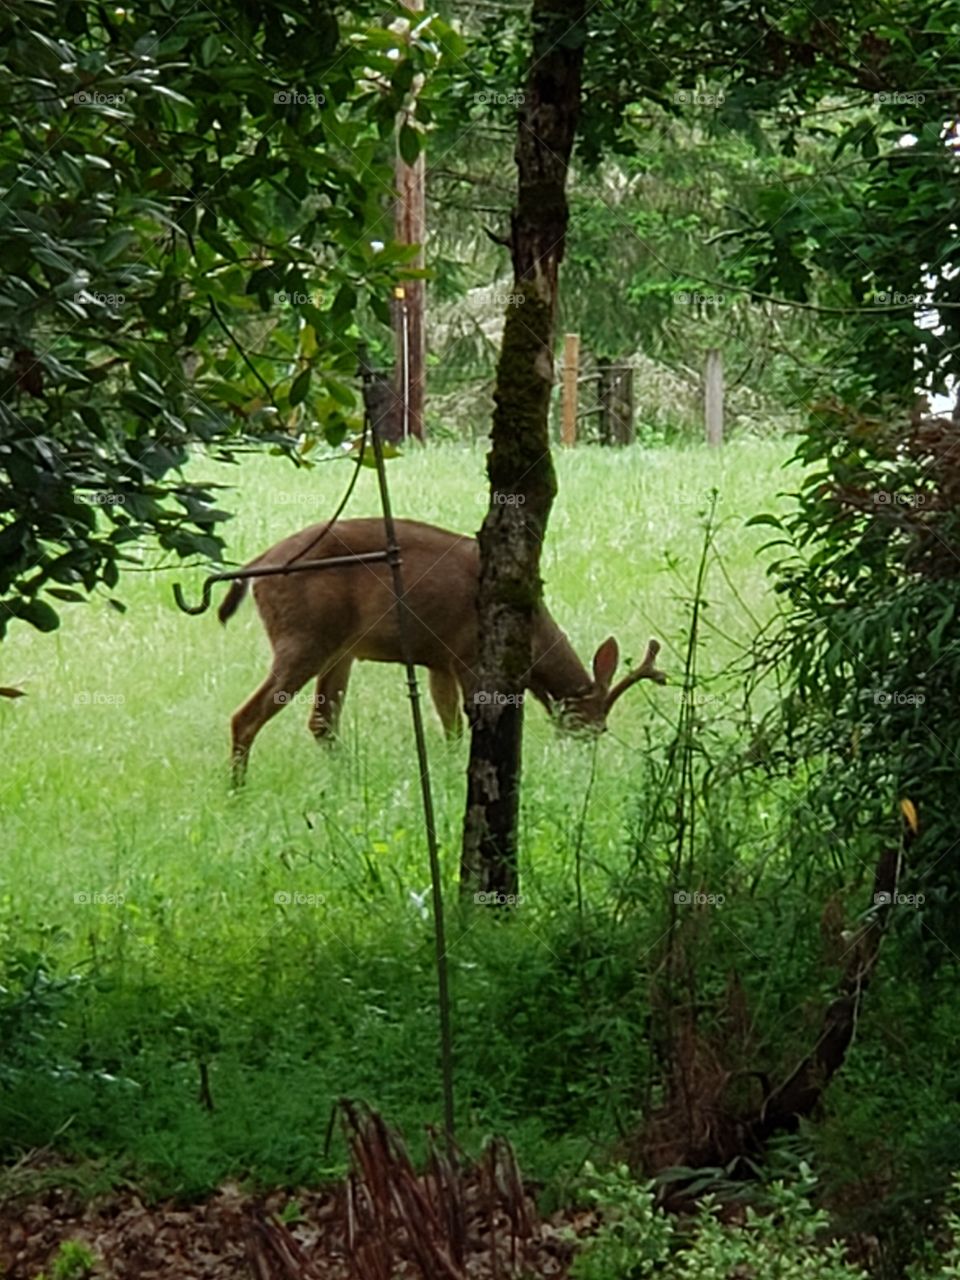 deer eating in field by tree